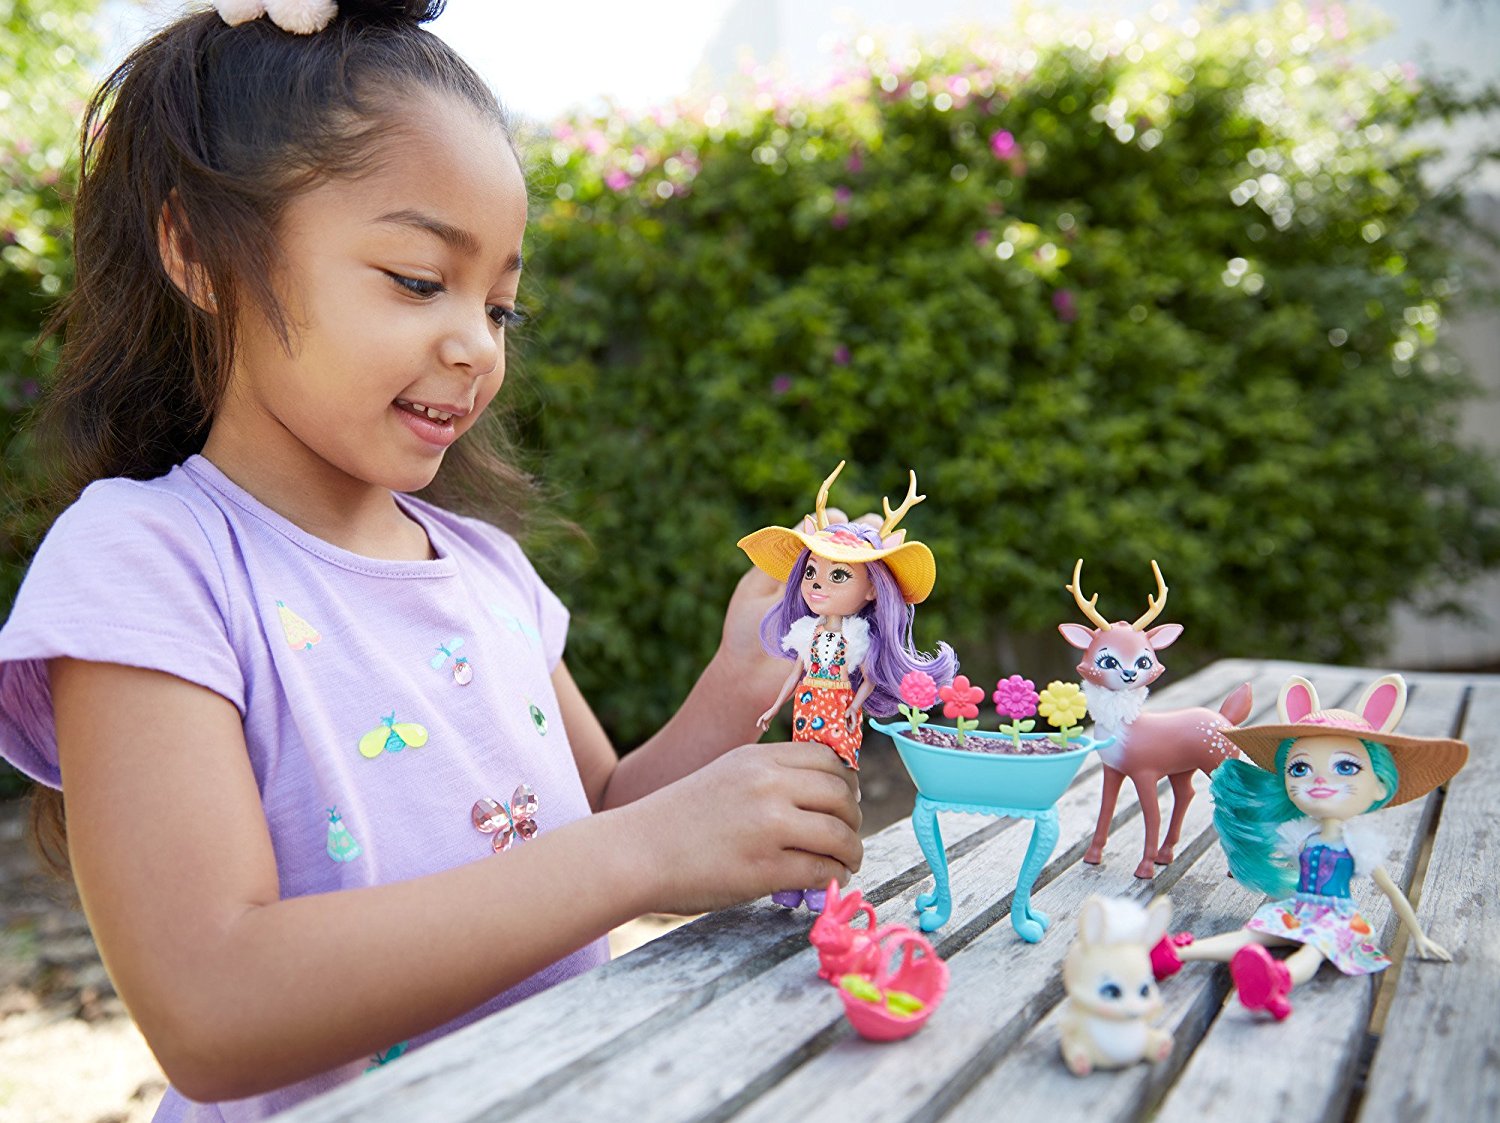 Куклы Флаффи и Данесса Garden Magic с питомцами зайчик и олененок 15см Enchantimals Mattel FDG01